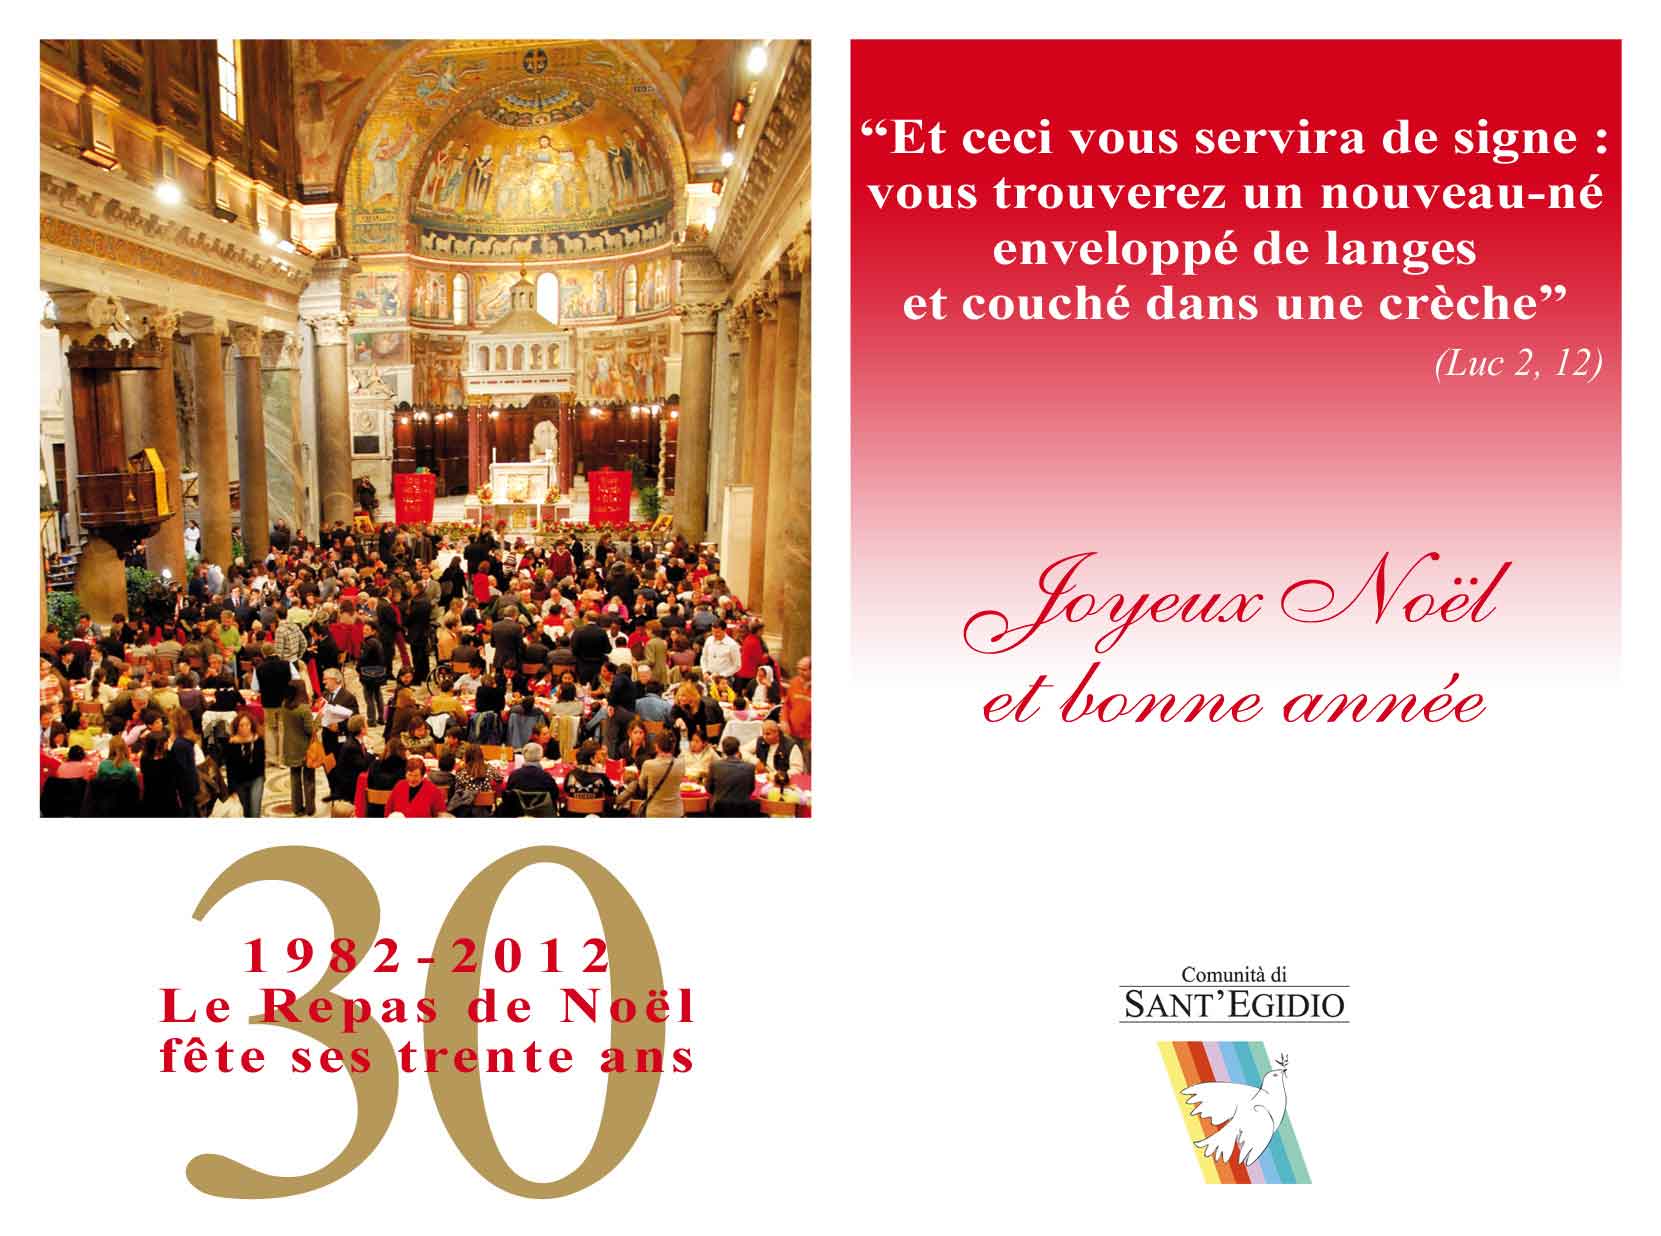 Noël 2011 - Meilleurs voeux de la Communauté de Sant'Egidio